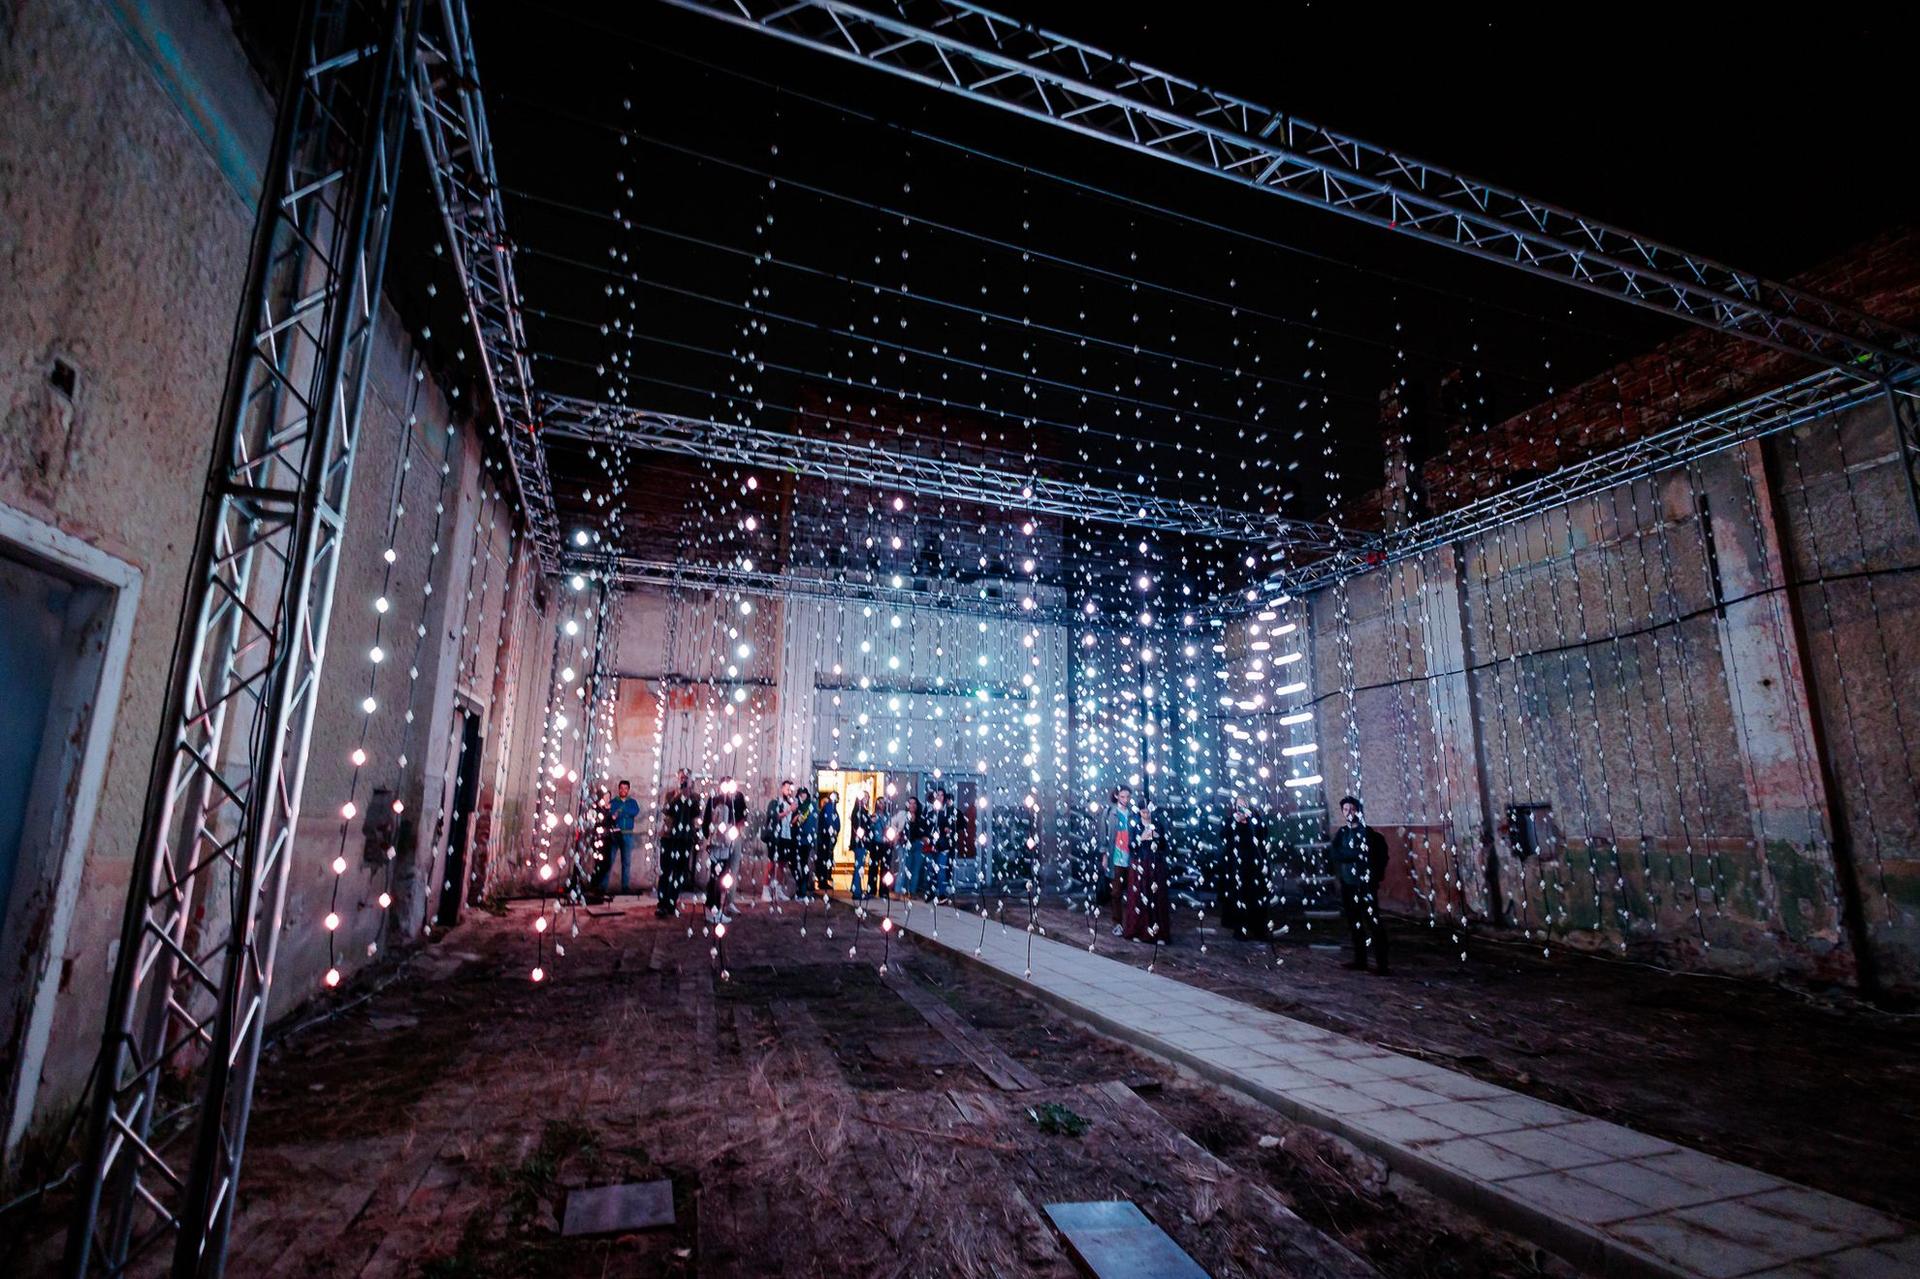 Submergence, una dintre cele mai spectaculoase instalații pe care le-a adus Lights On Romania până acum, amplasată în fostul Cinematograf Arta din Timișoara - clădire abandonată de multi ani, fără acoperiș, și care acum oferă un farmec aparte pentru amplasarea acestei instalații. 